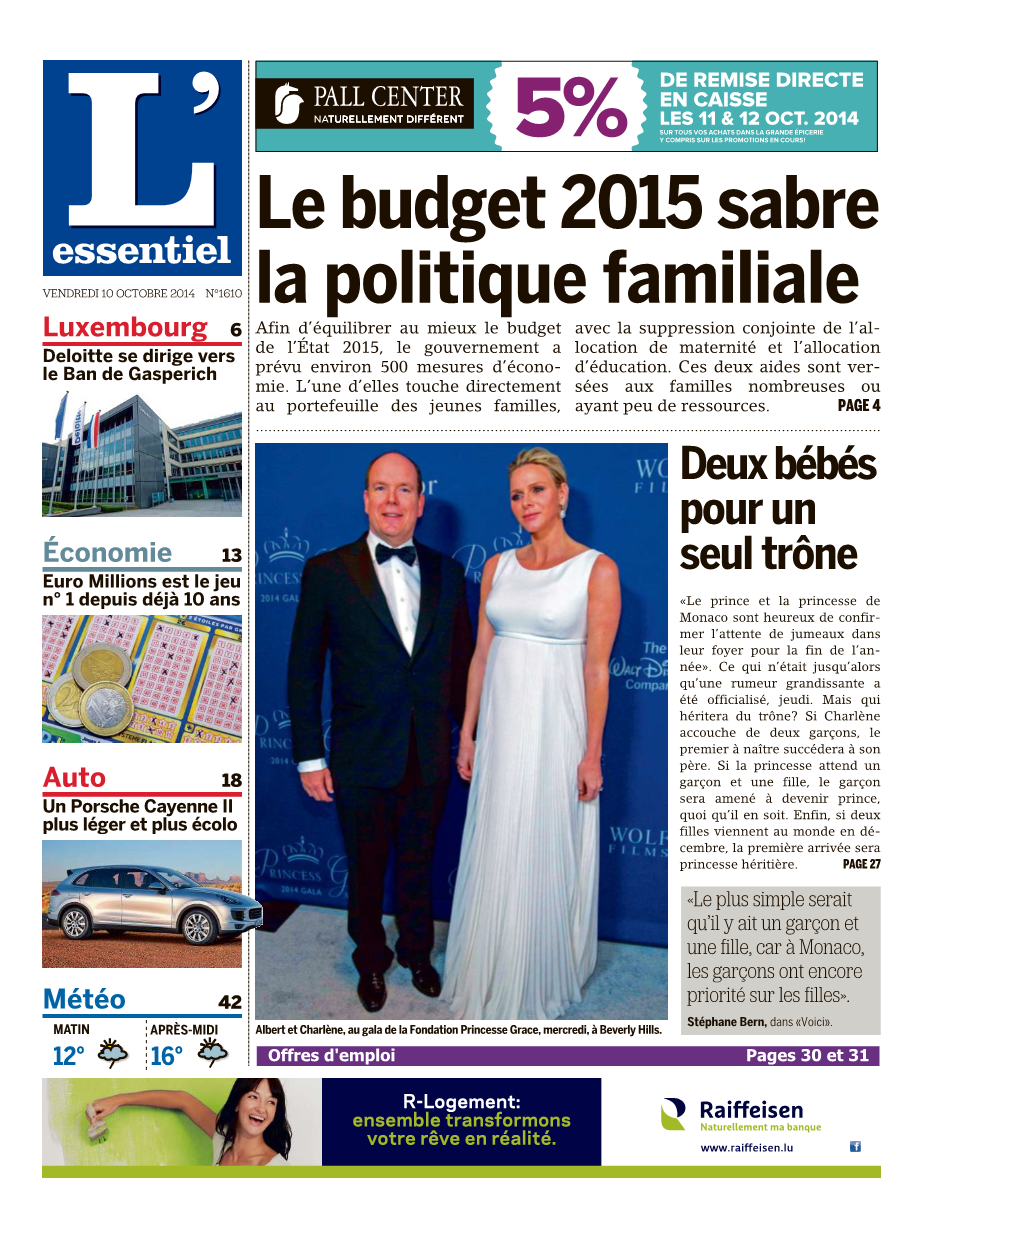 Lebudget2015sabre La Politique Familiale